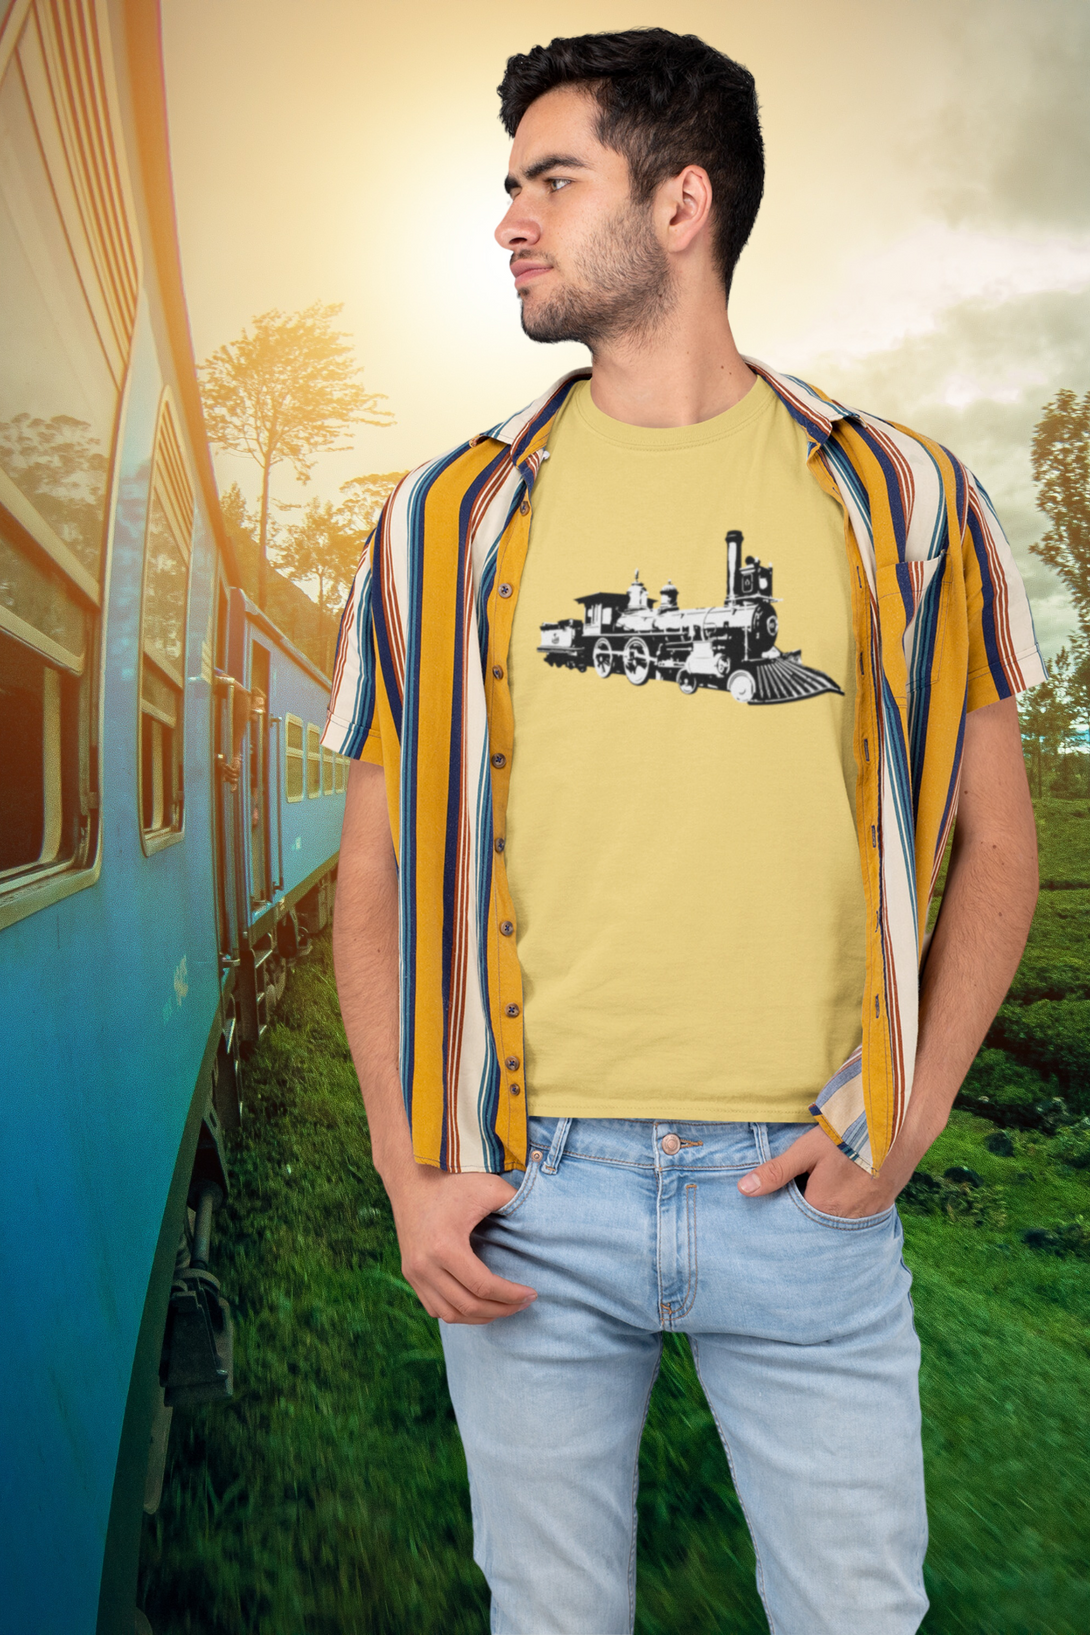 Vintage Locomotive Printed T-Shirt For Men - WowWaves - 7